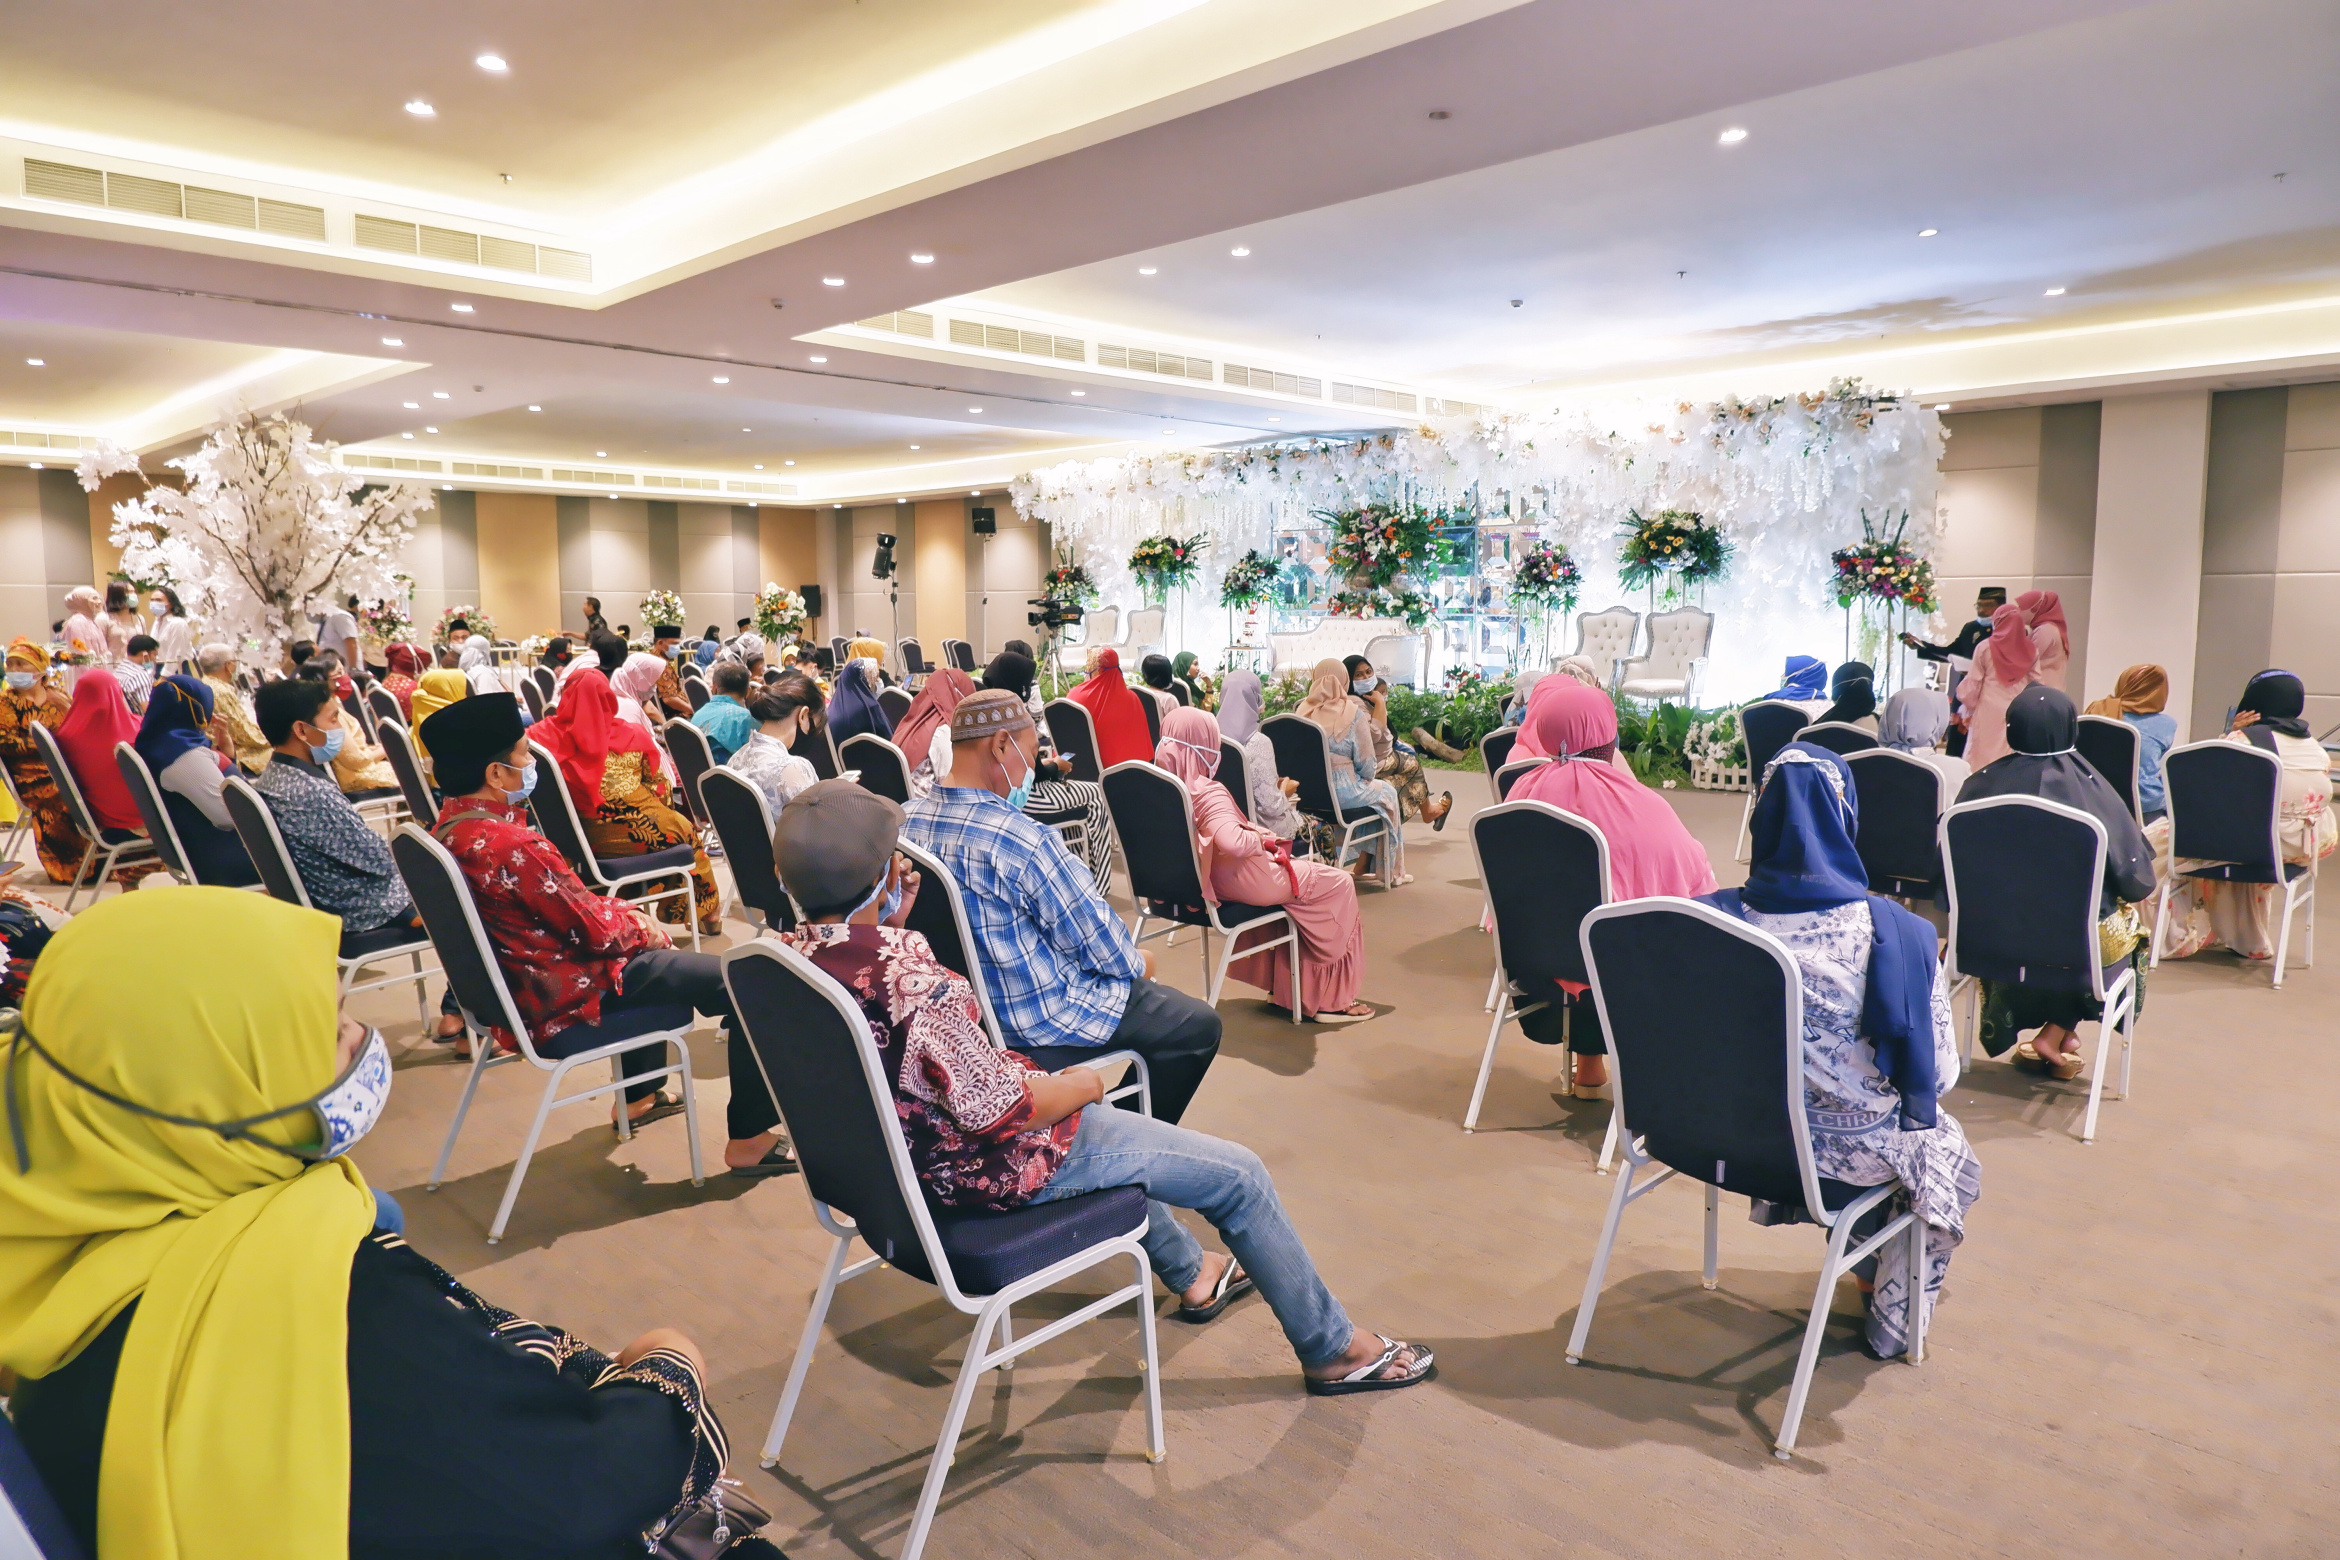 Protokol kesehatan 3M yang diterapka pada acara pernikahan di Hotel Palm Park Surabaya. (Foto: Istimewa)